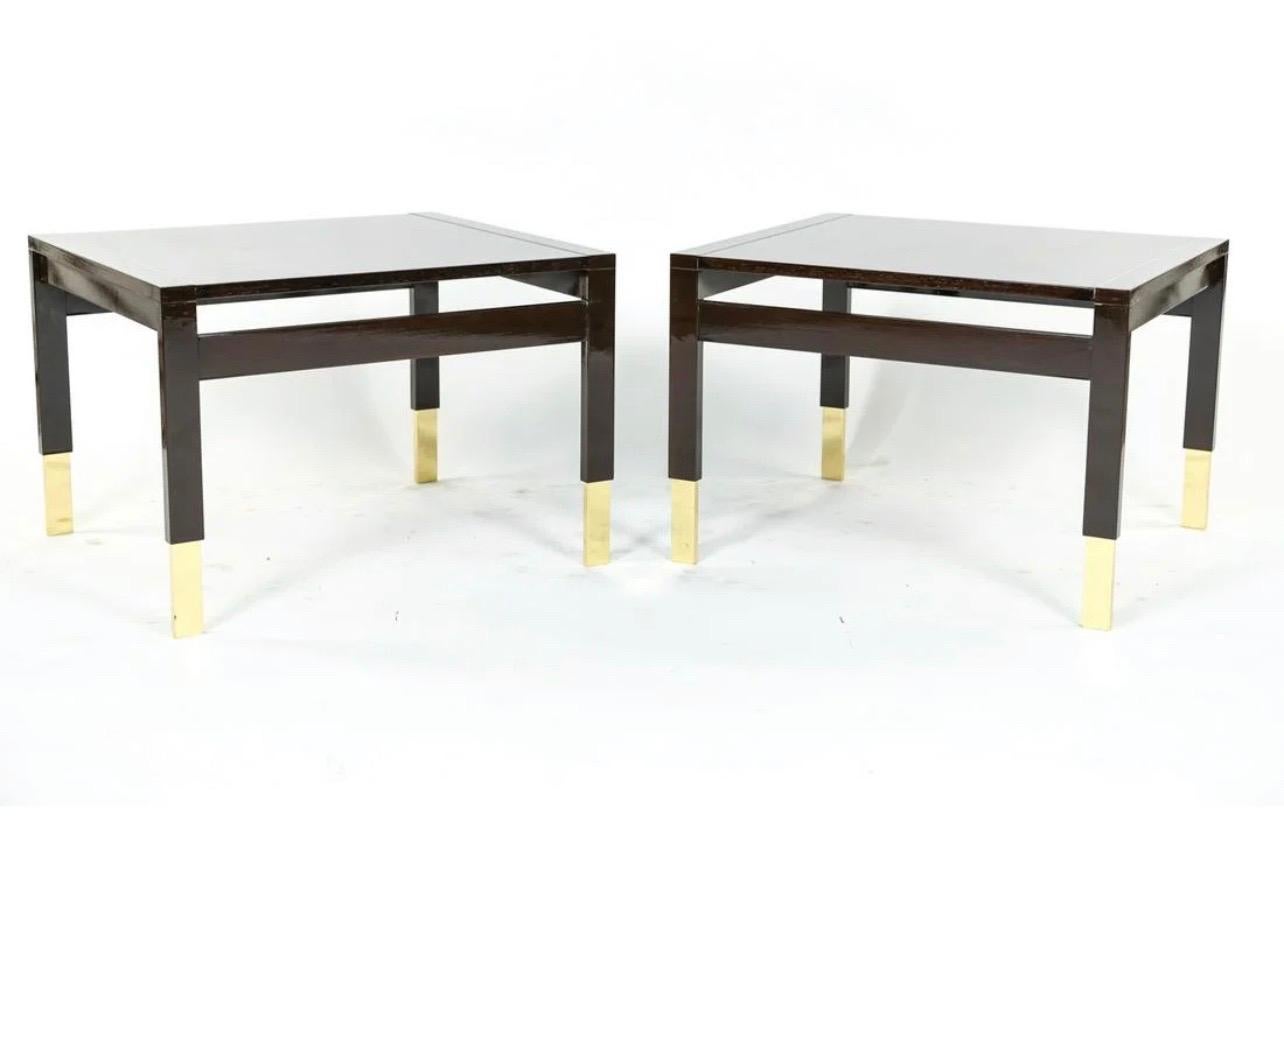 Magnifique paire de tables d'appoint Lorin Marsh en Wenge laqué et bois émaillé avec sabots en laiton.
Etiquette métallique Lorin Marsh sous une table.
Dimensions : 18